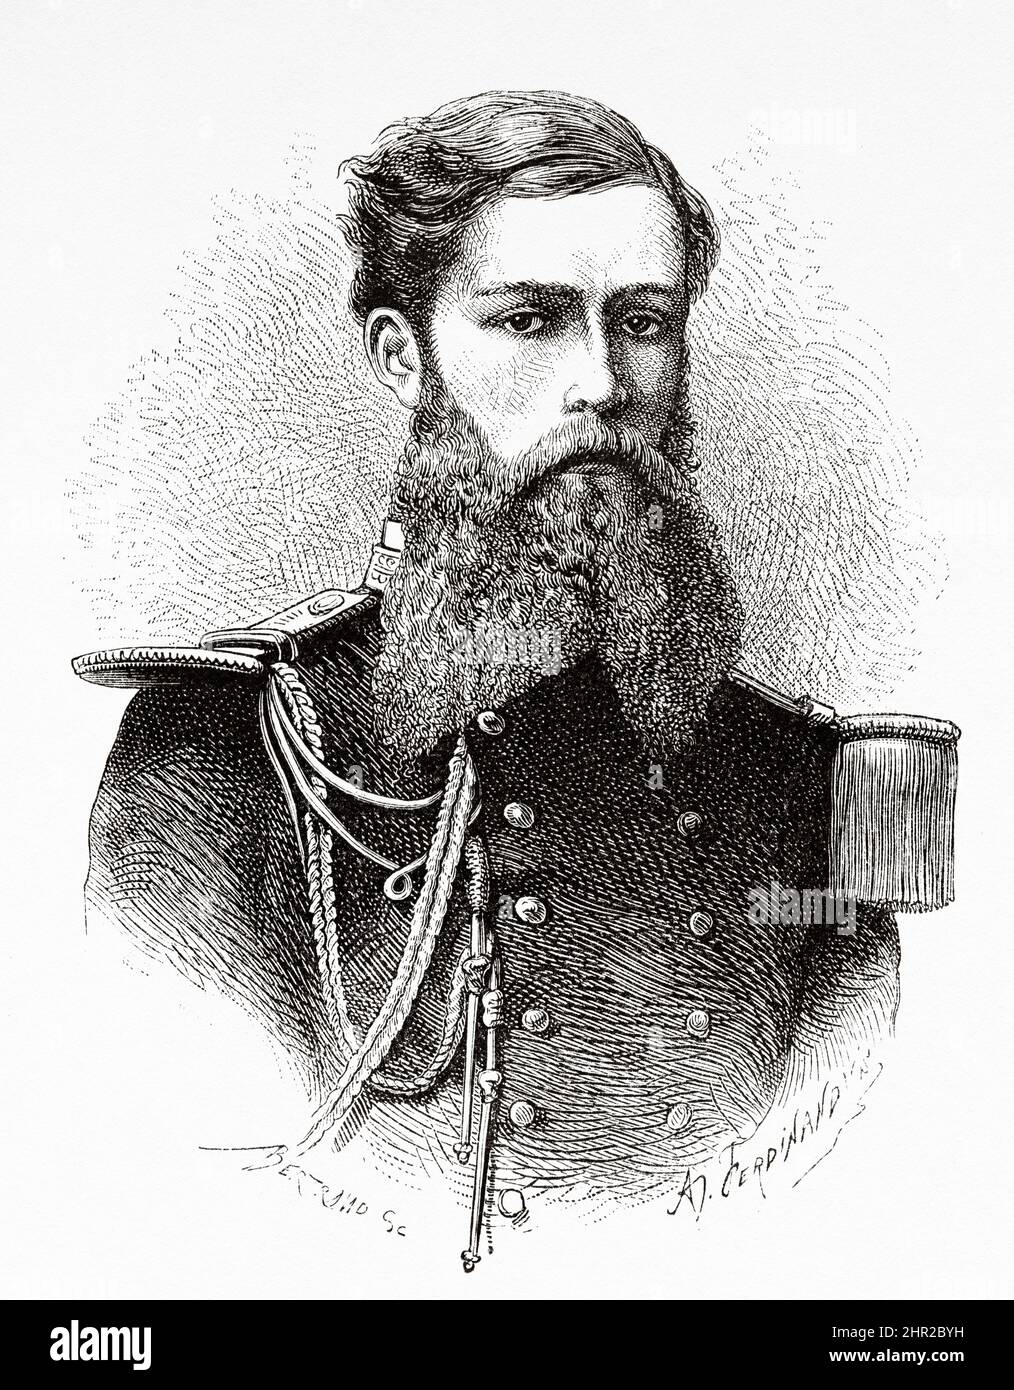 Adrien-Paul Balny d'Avricourt (1849-1873) war ein französischer Marineoffizier in Vietnam. Asien. Eroberung des Tonkin-Deltas durch Romanet de Caillaud Stockfoto